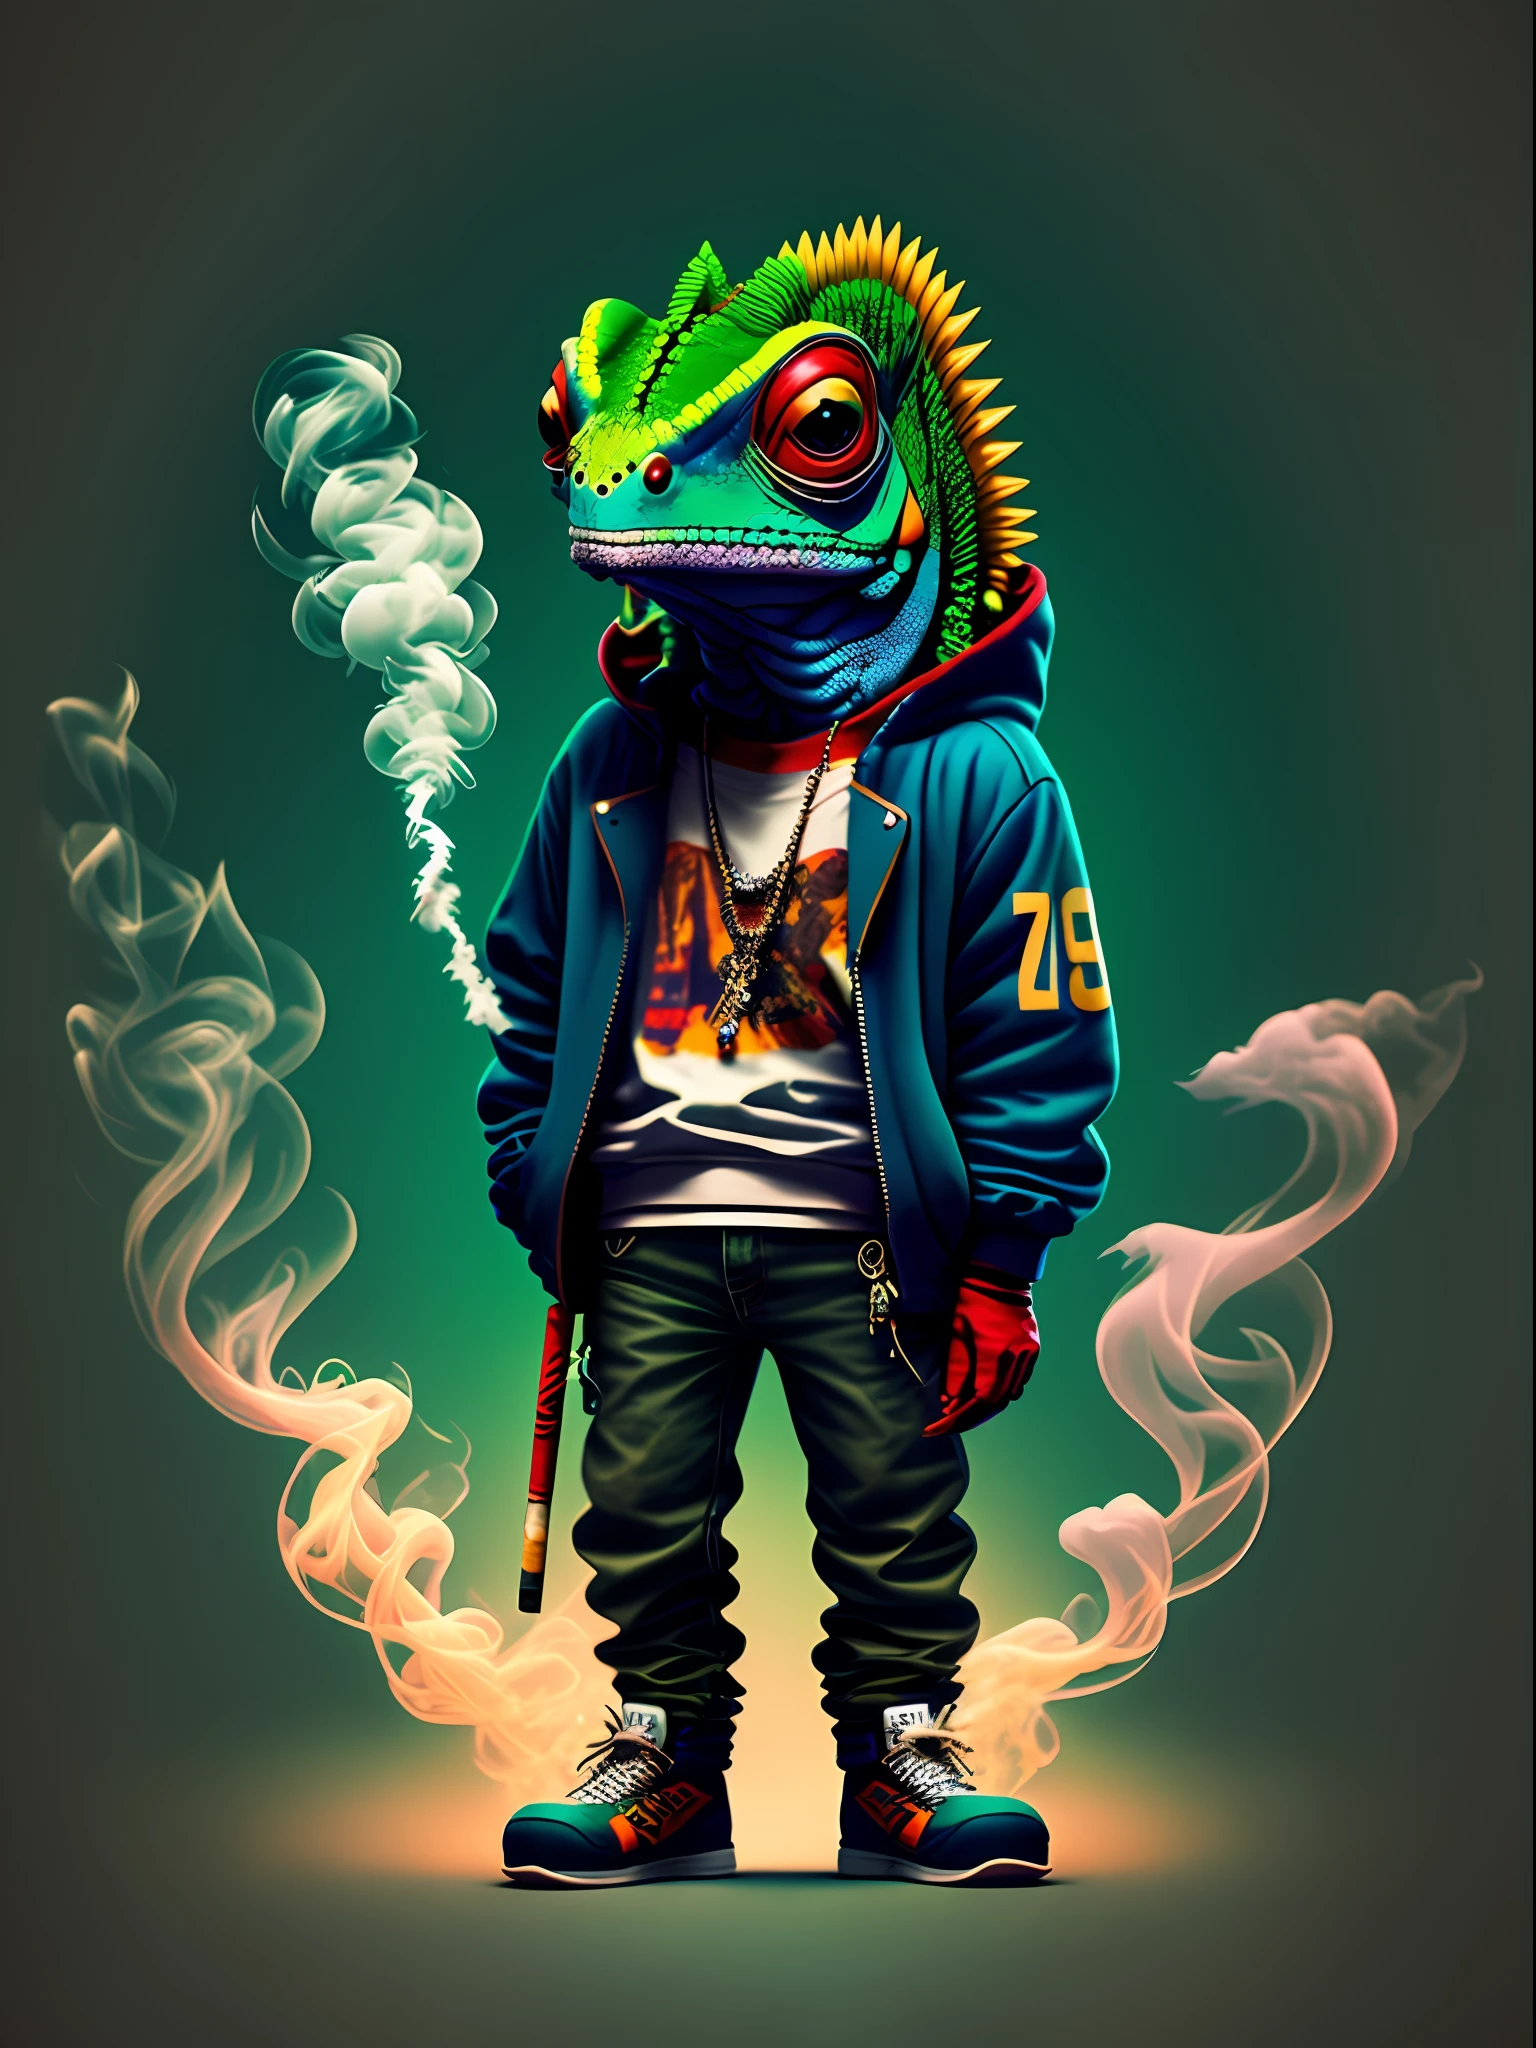 Изображение хамелеона, стоящего и курящего сигарету, Ношение одежды в стиле хип-хоп, стиль 90-х